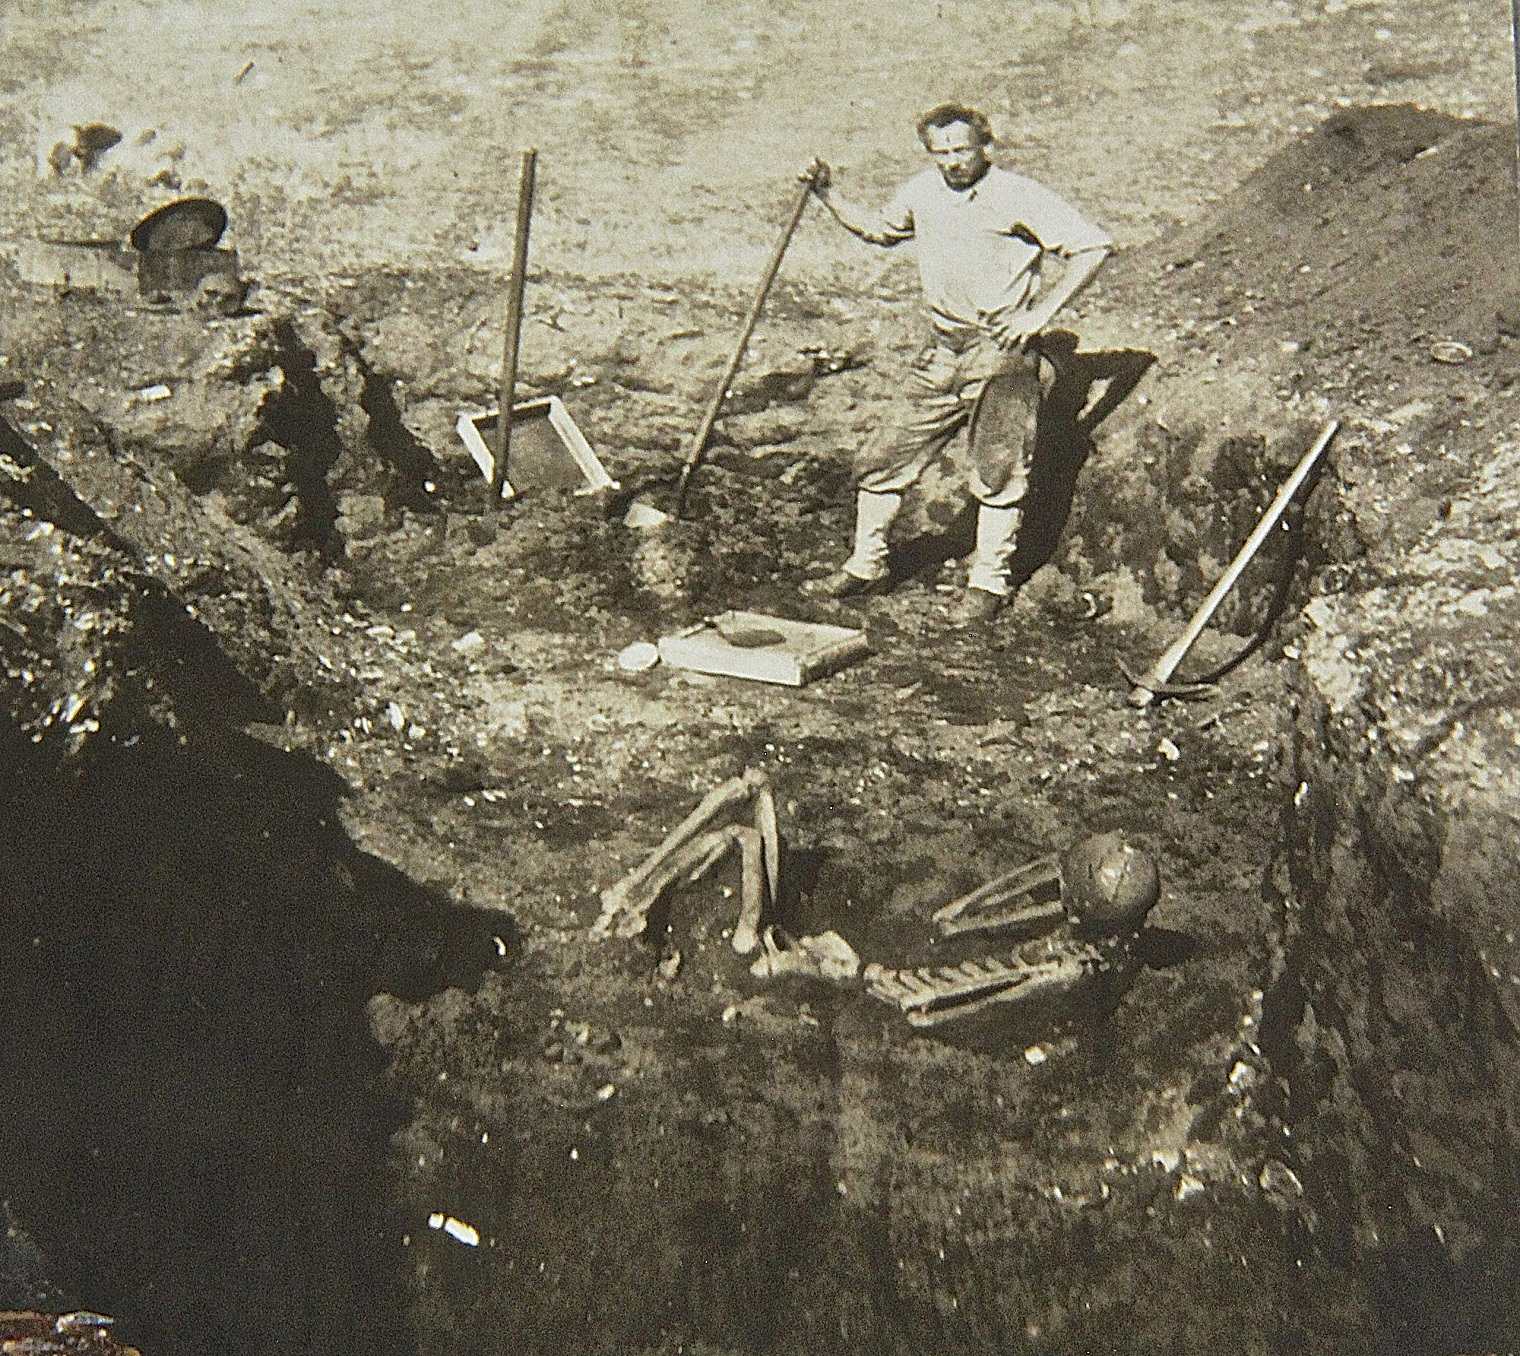 Обнаружение останков скелетов светловолосых гигантов на острове Каталина 1